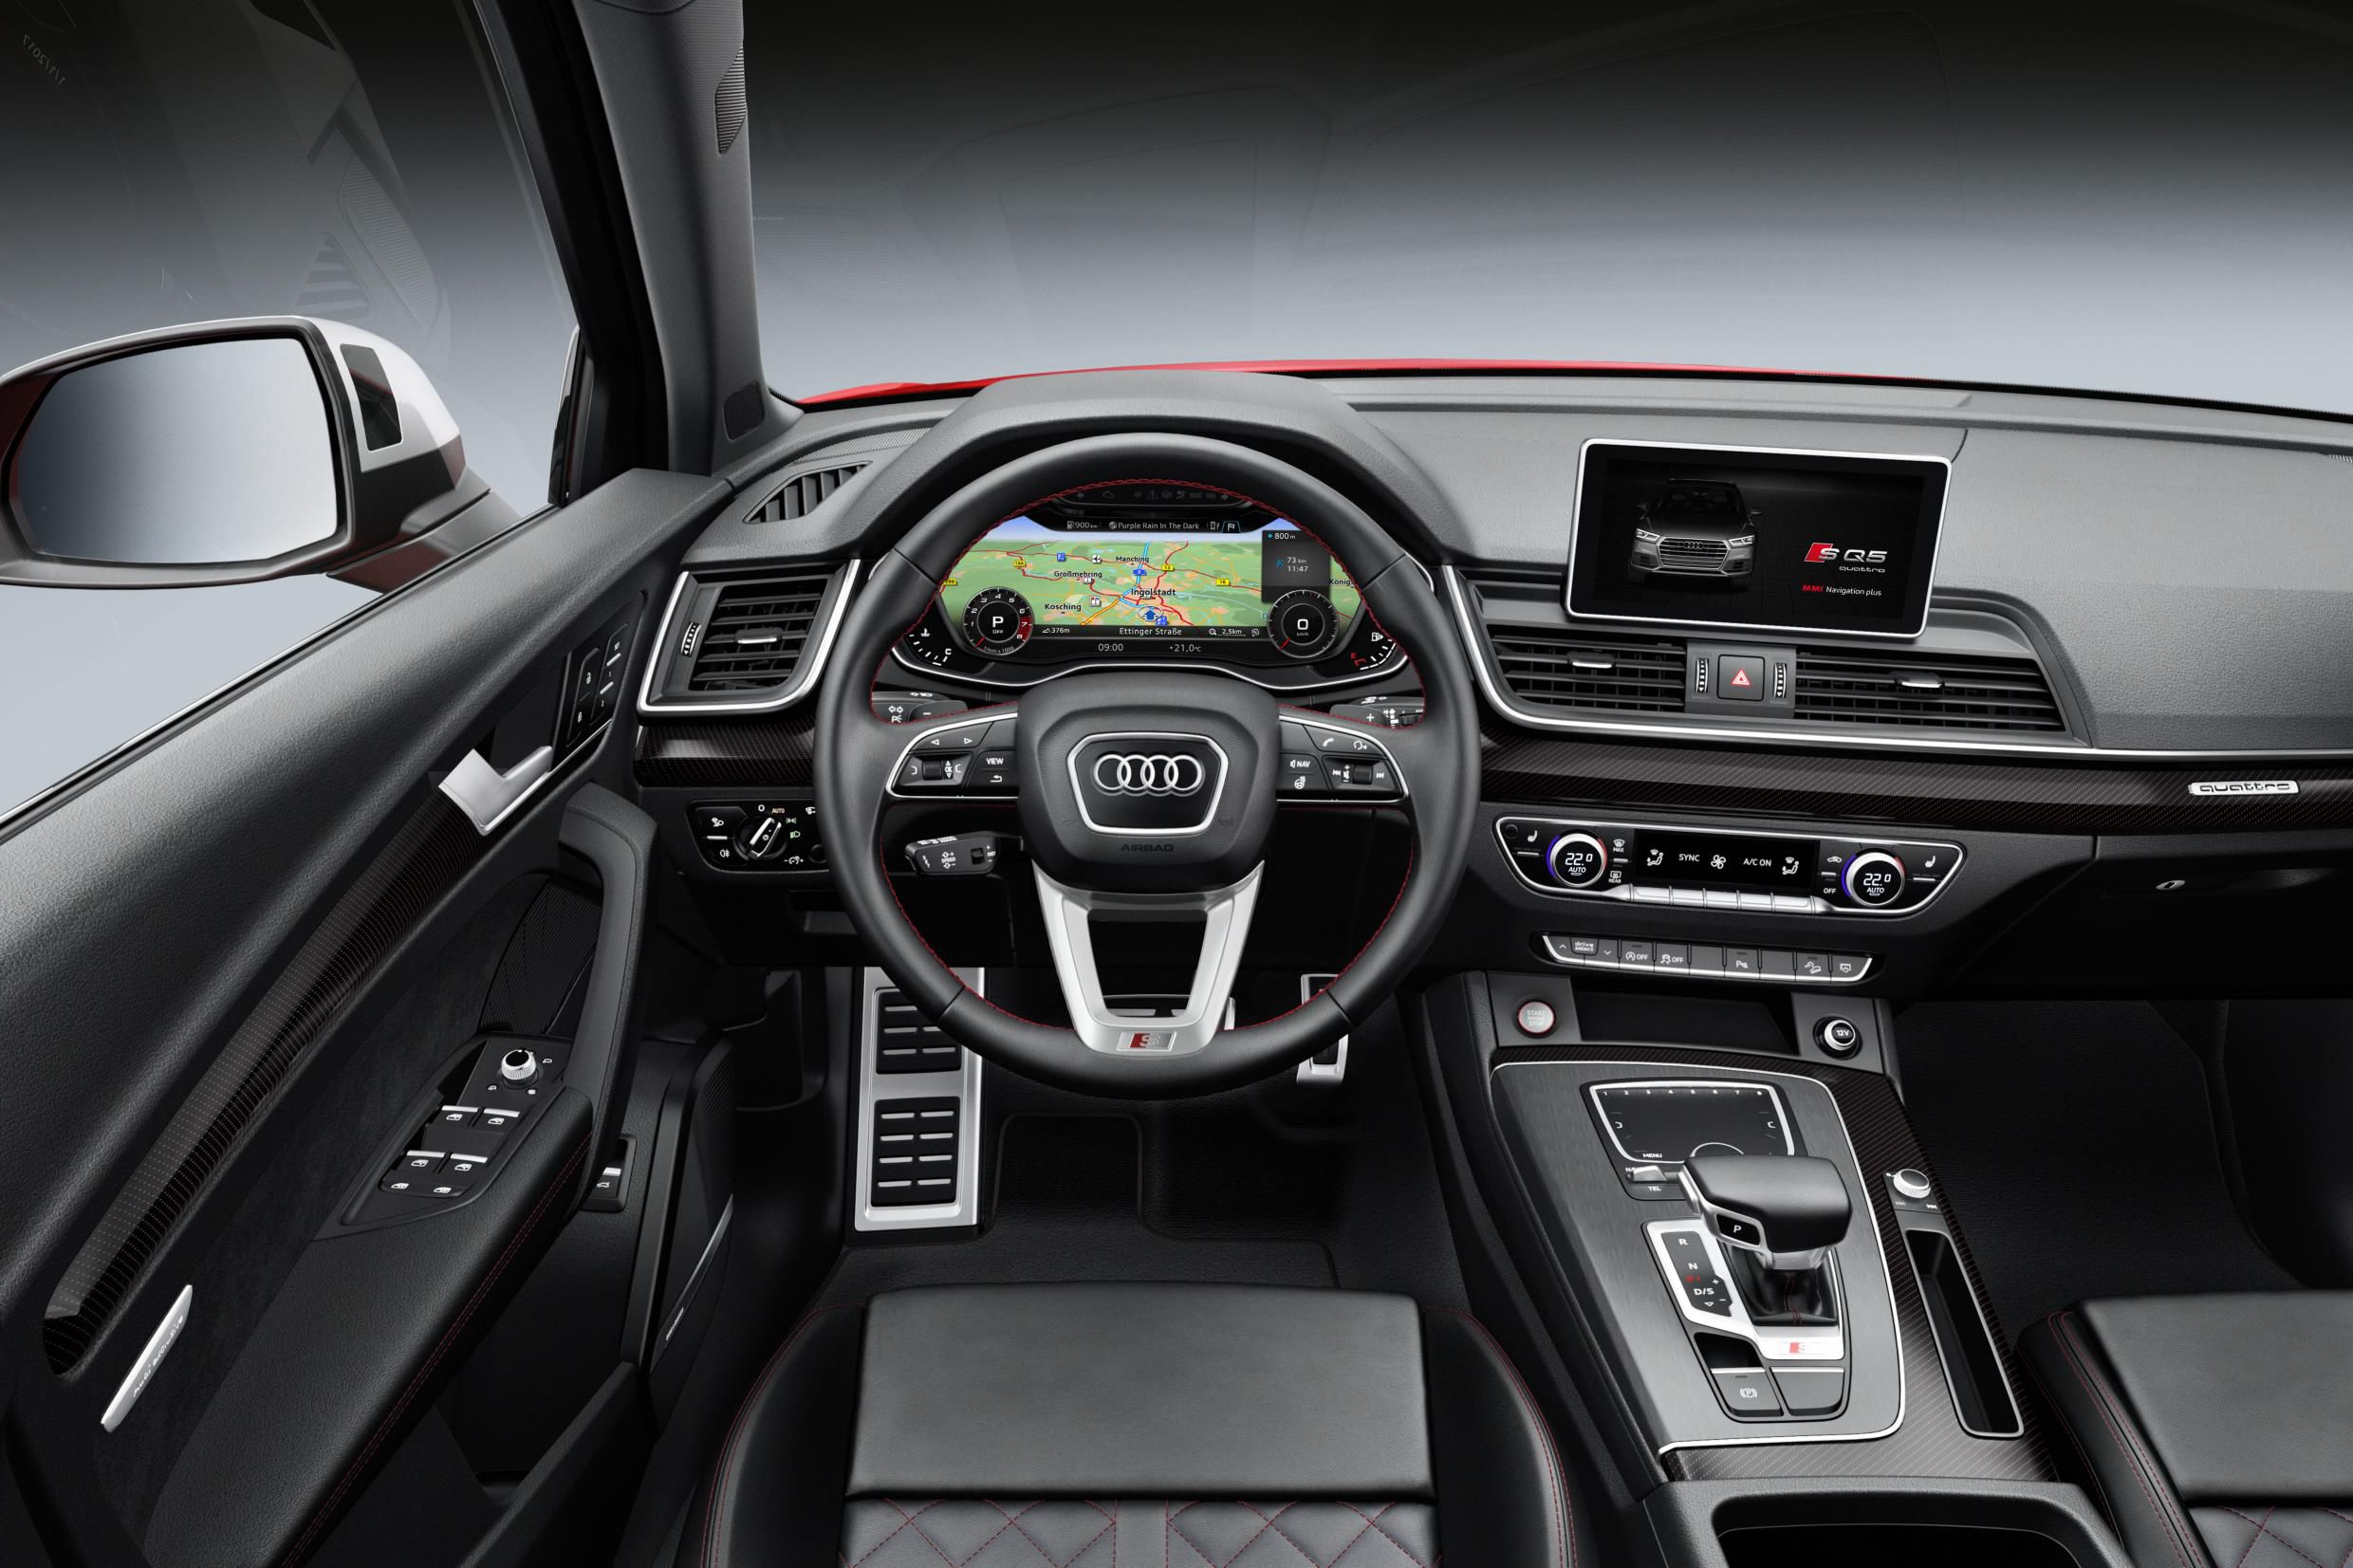 Audi SQ5 interior dashboard